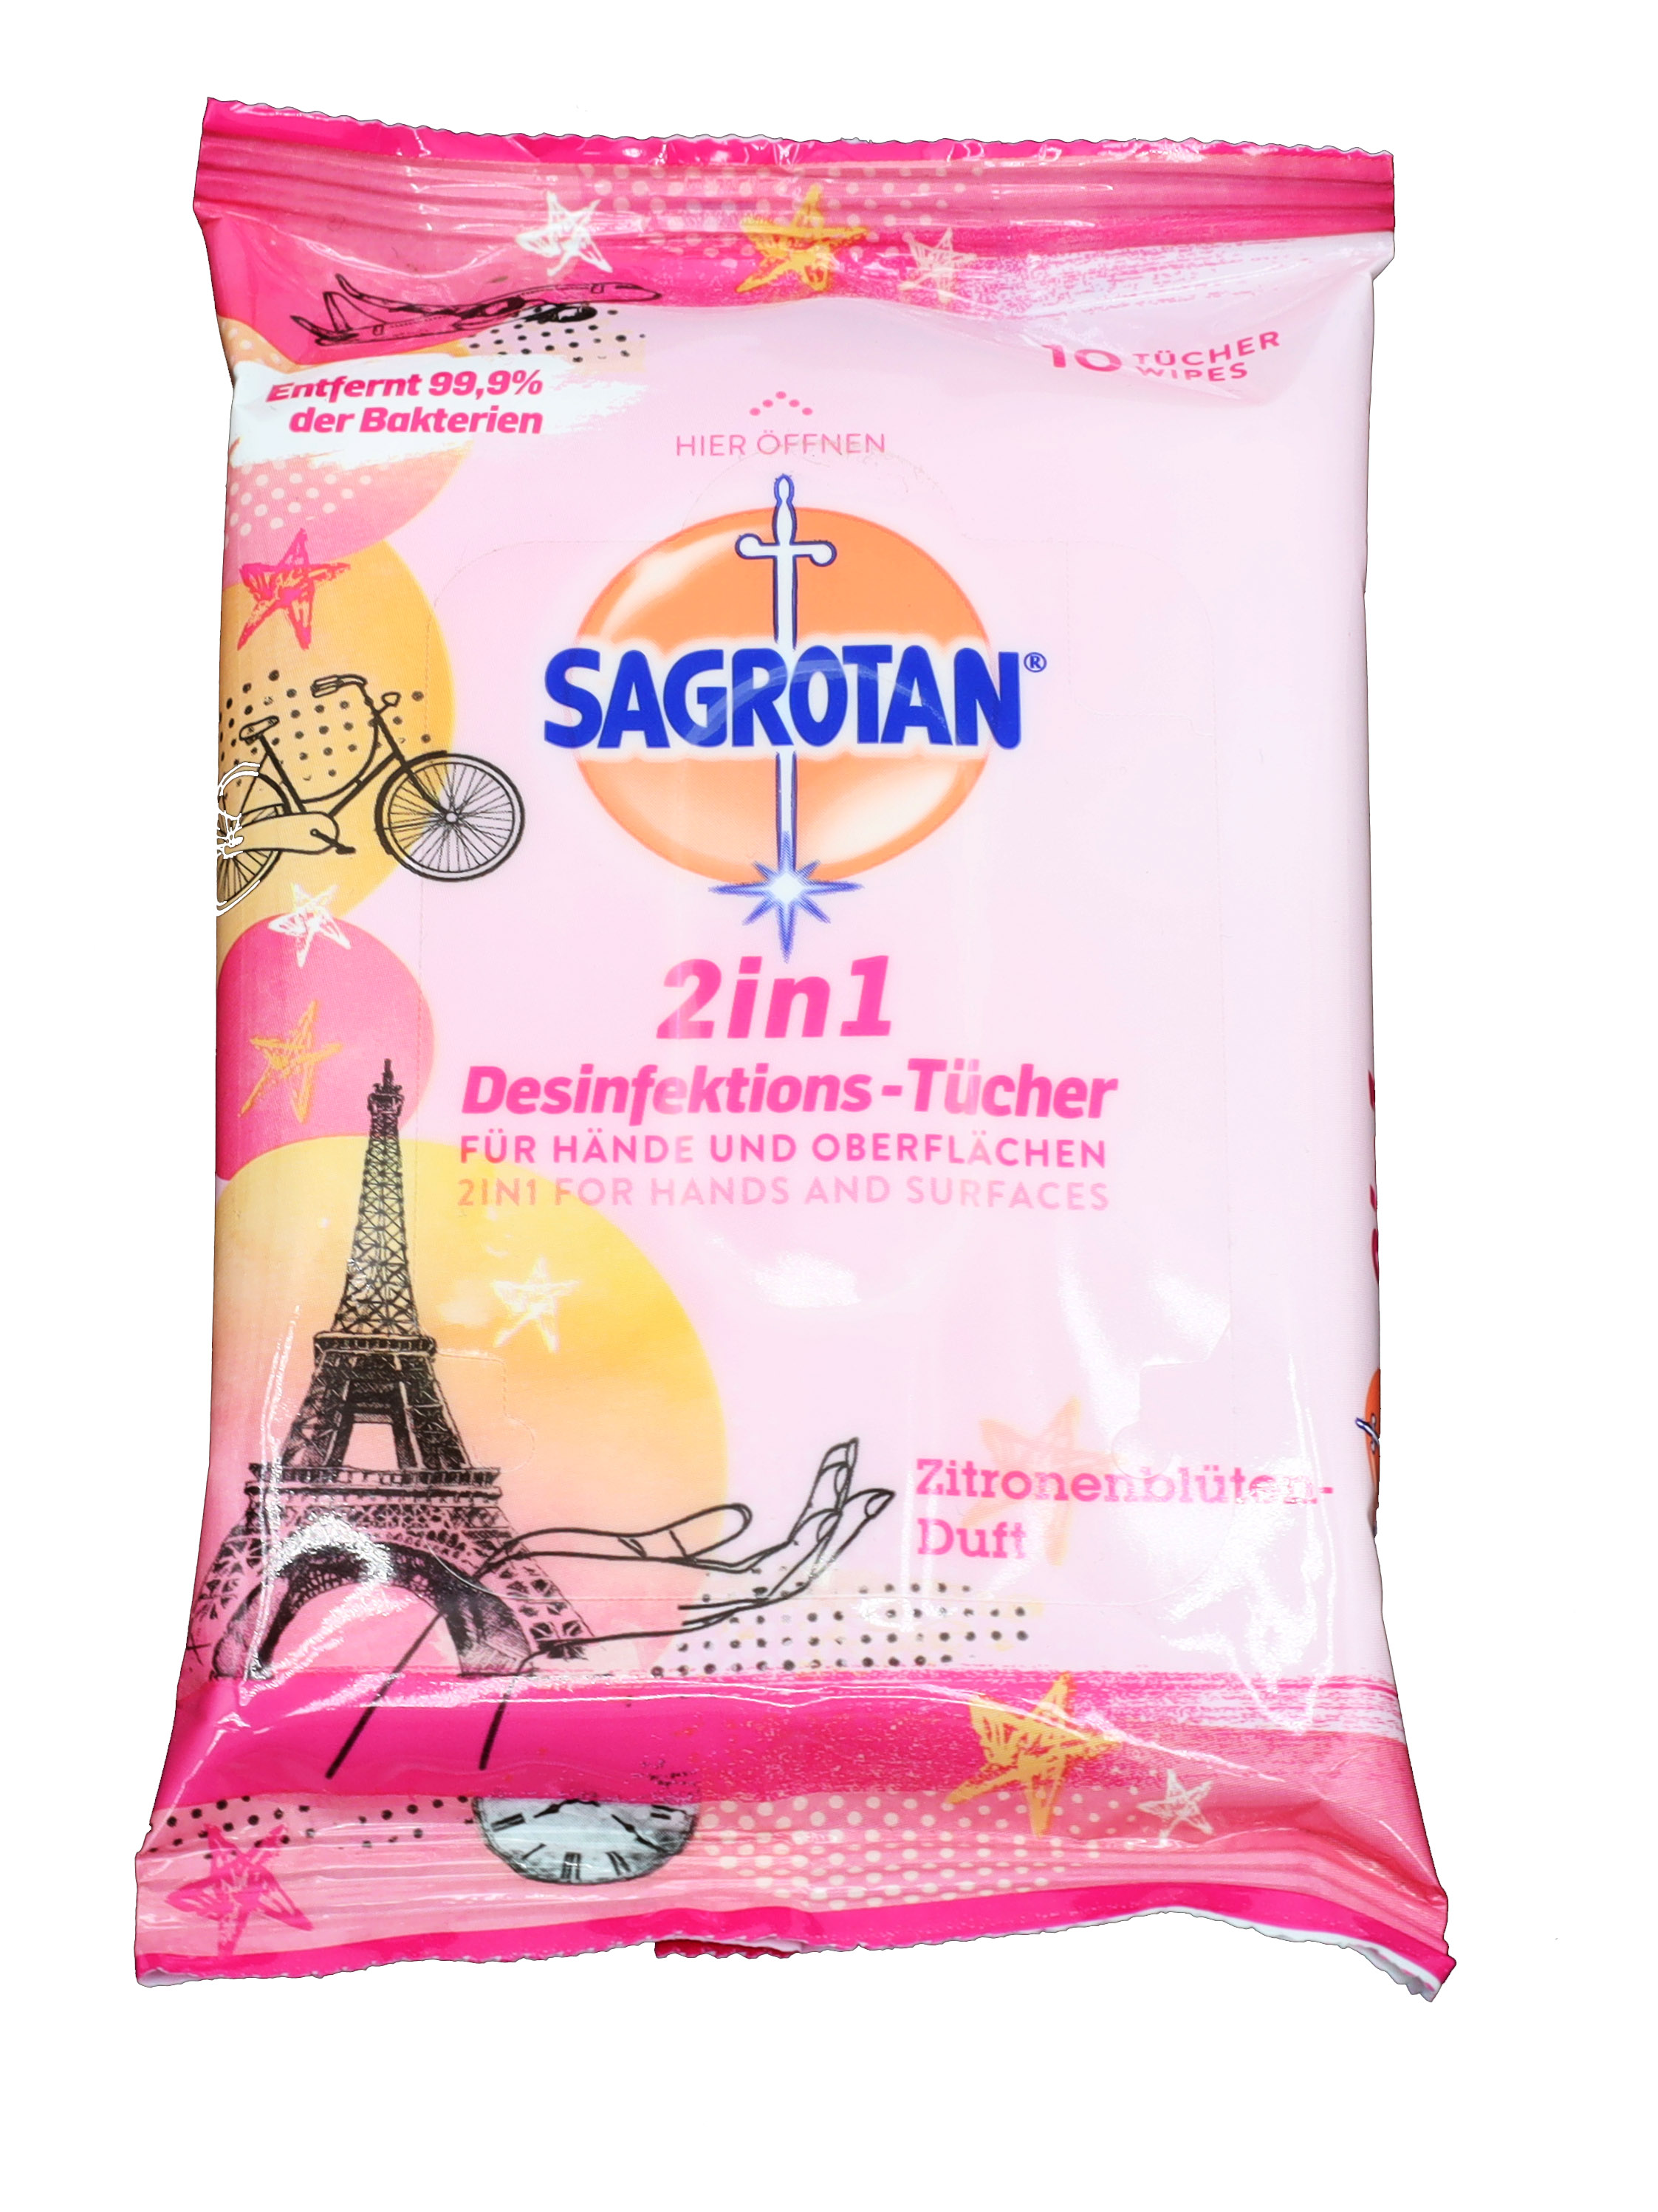 Sagrotan 2in1 Desinfektions-Tücher 10Stück Zitronenblüten-Duft